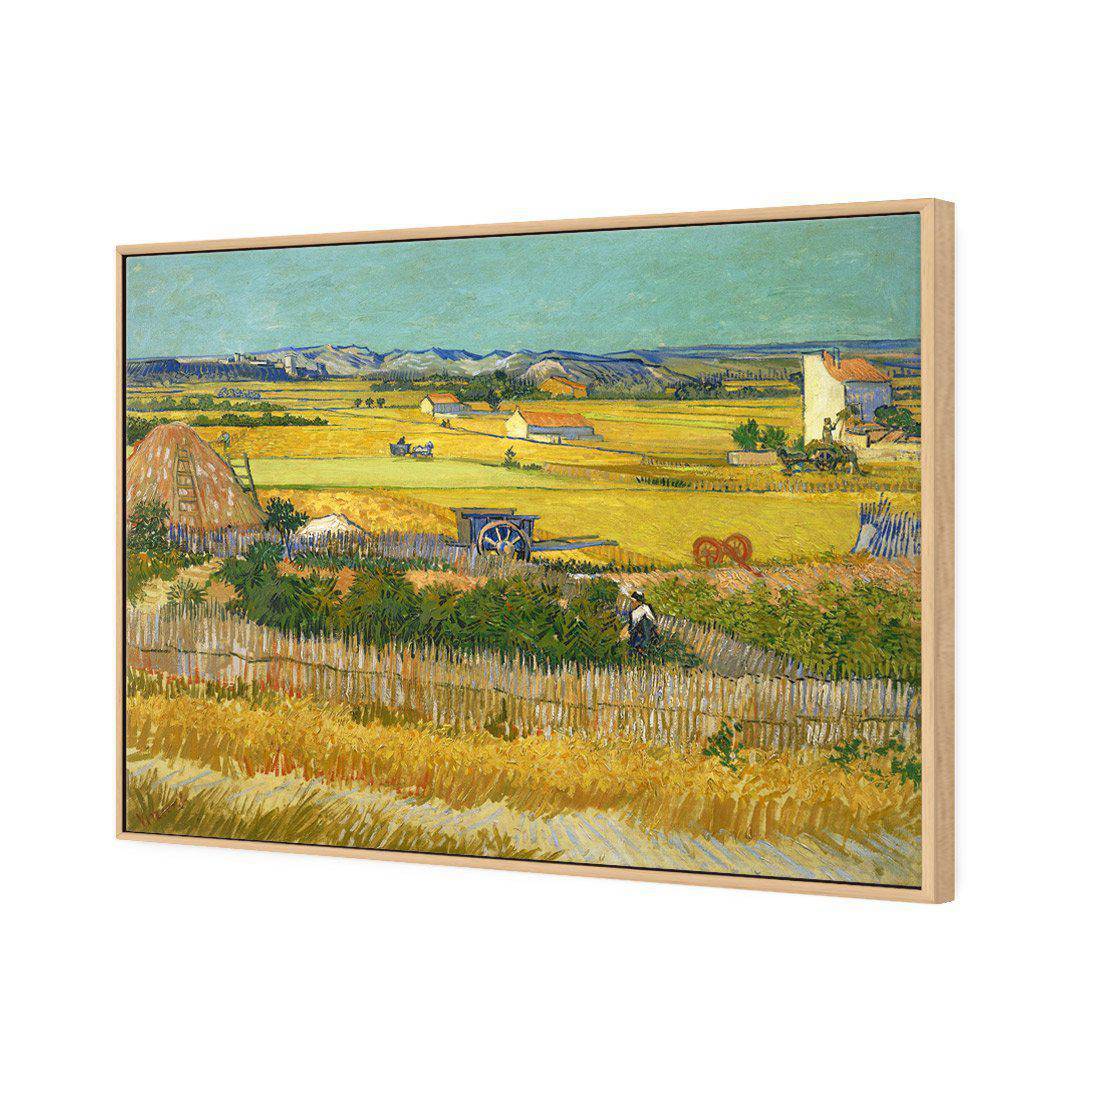 Harvest - Van Gogh Canvas Art-Canvas-Wall Art Designs-45x30cm-Canvas - Oak Frame-Wall Art Designs